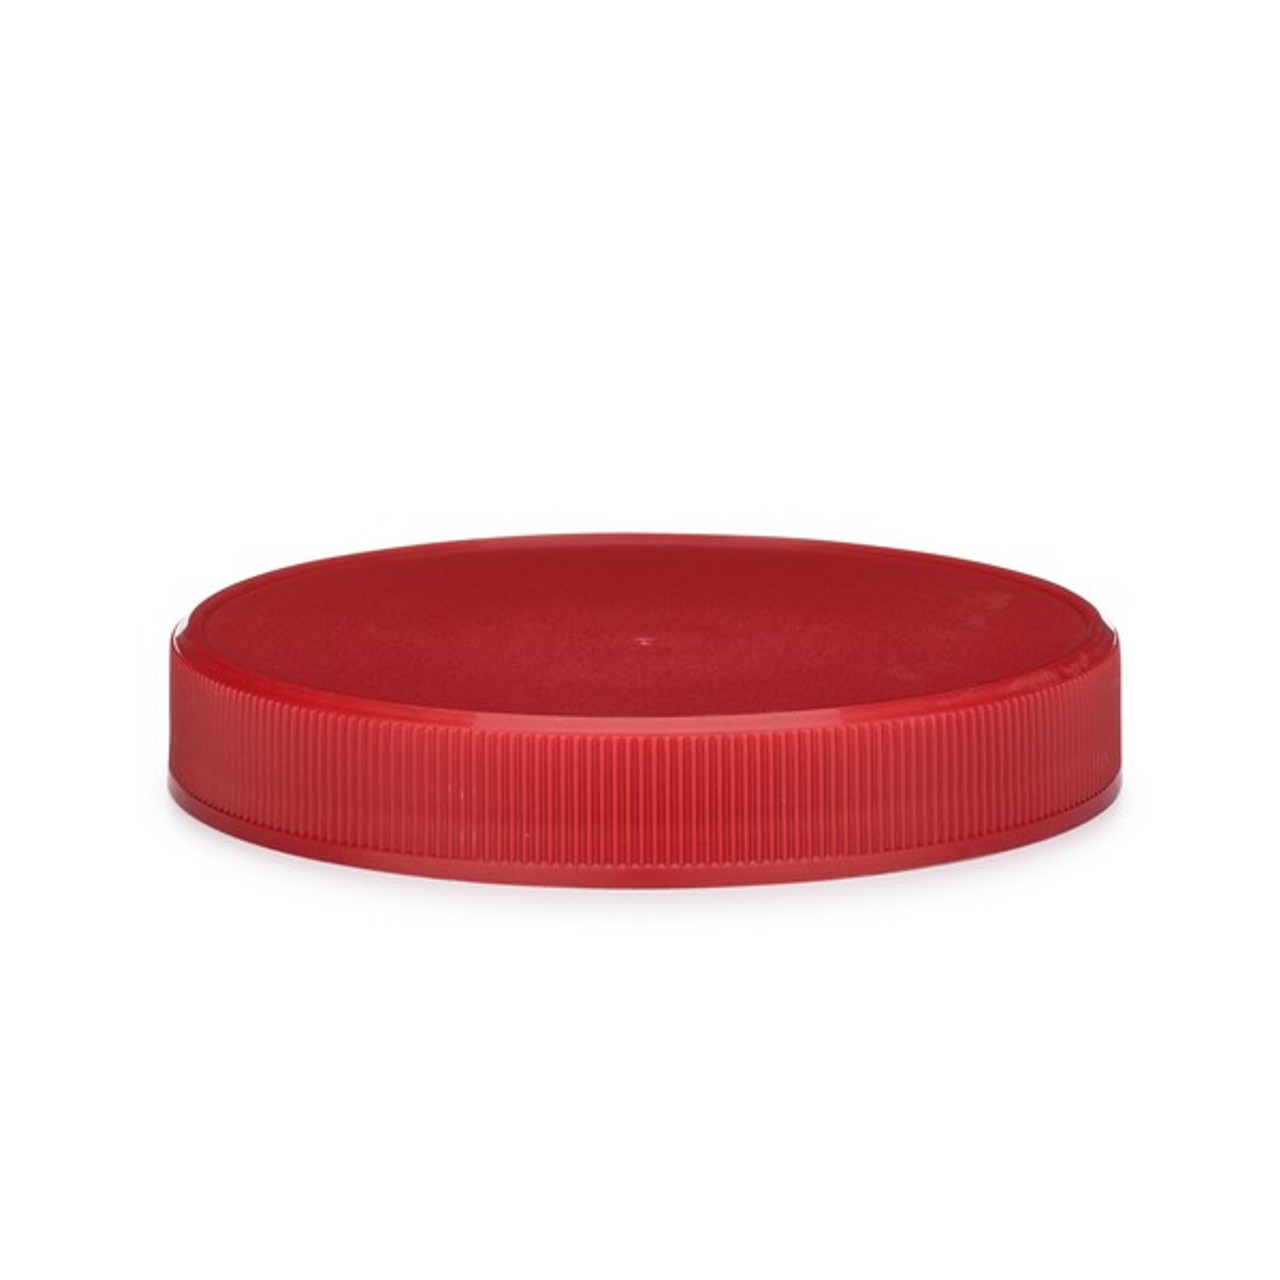 red plastic caps